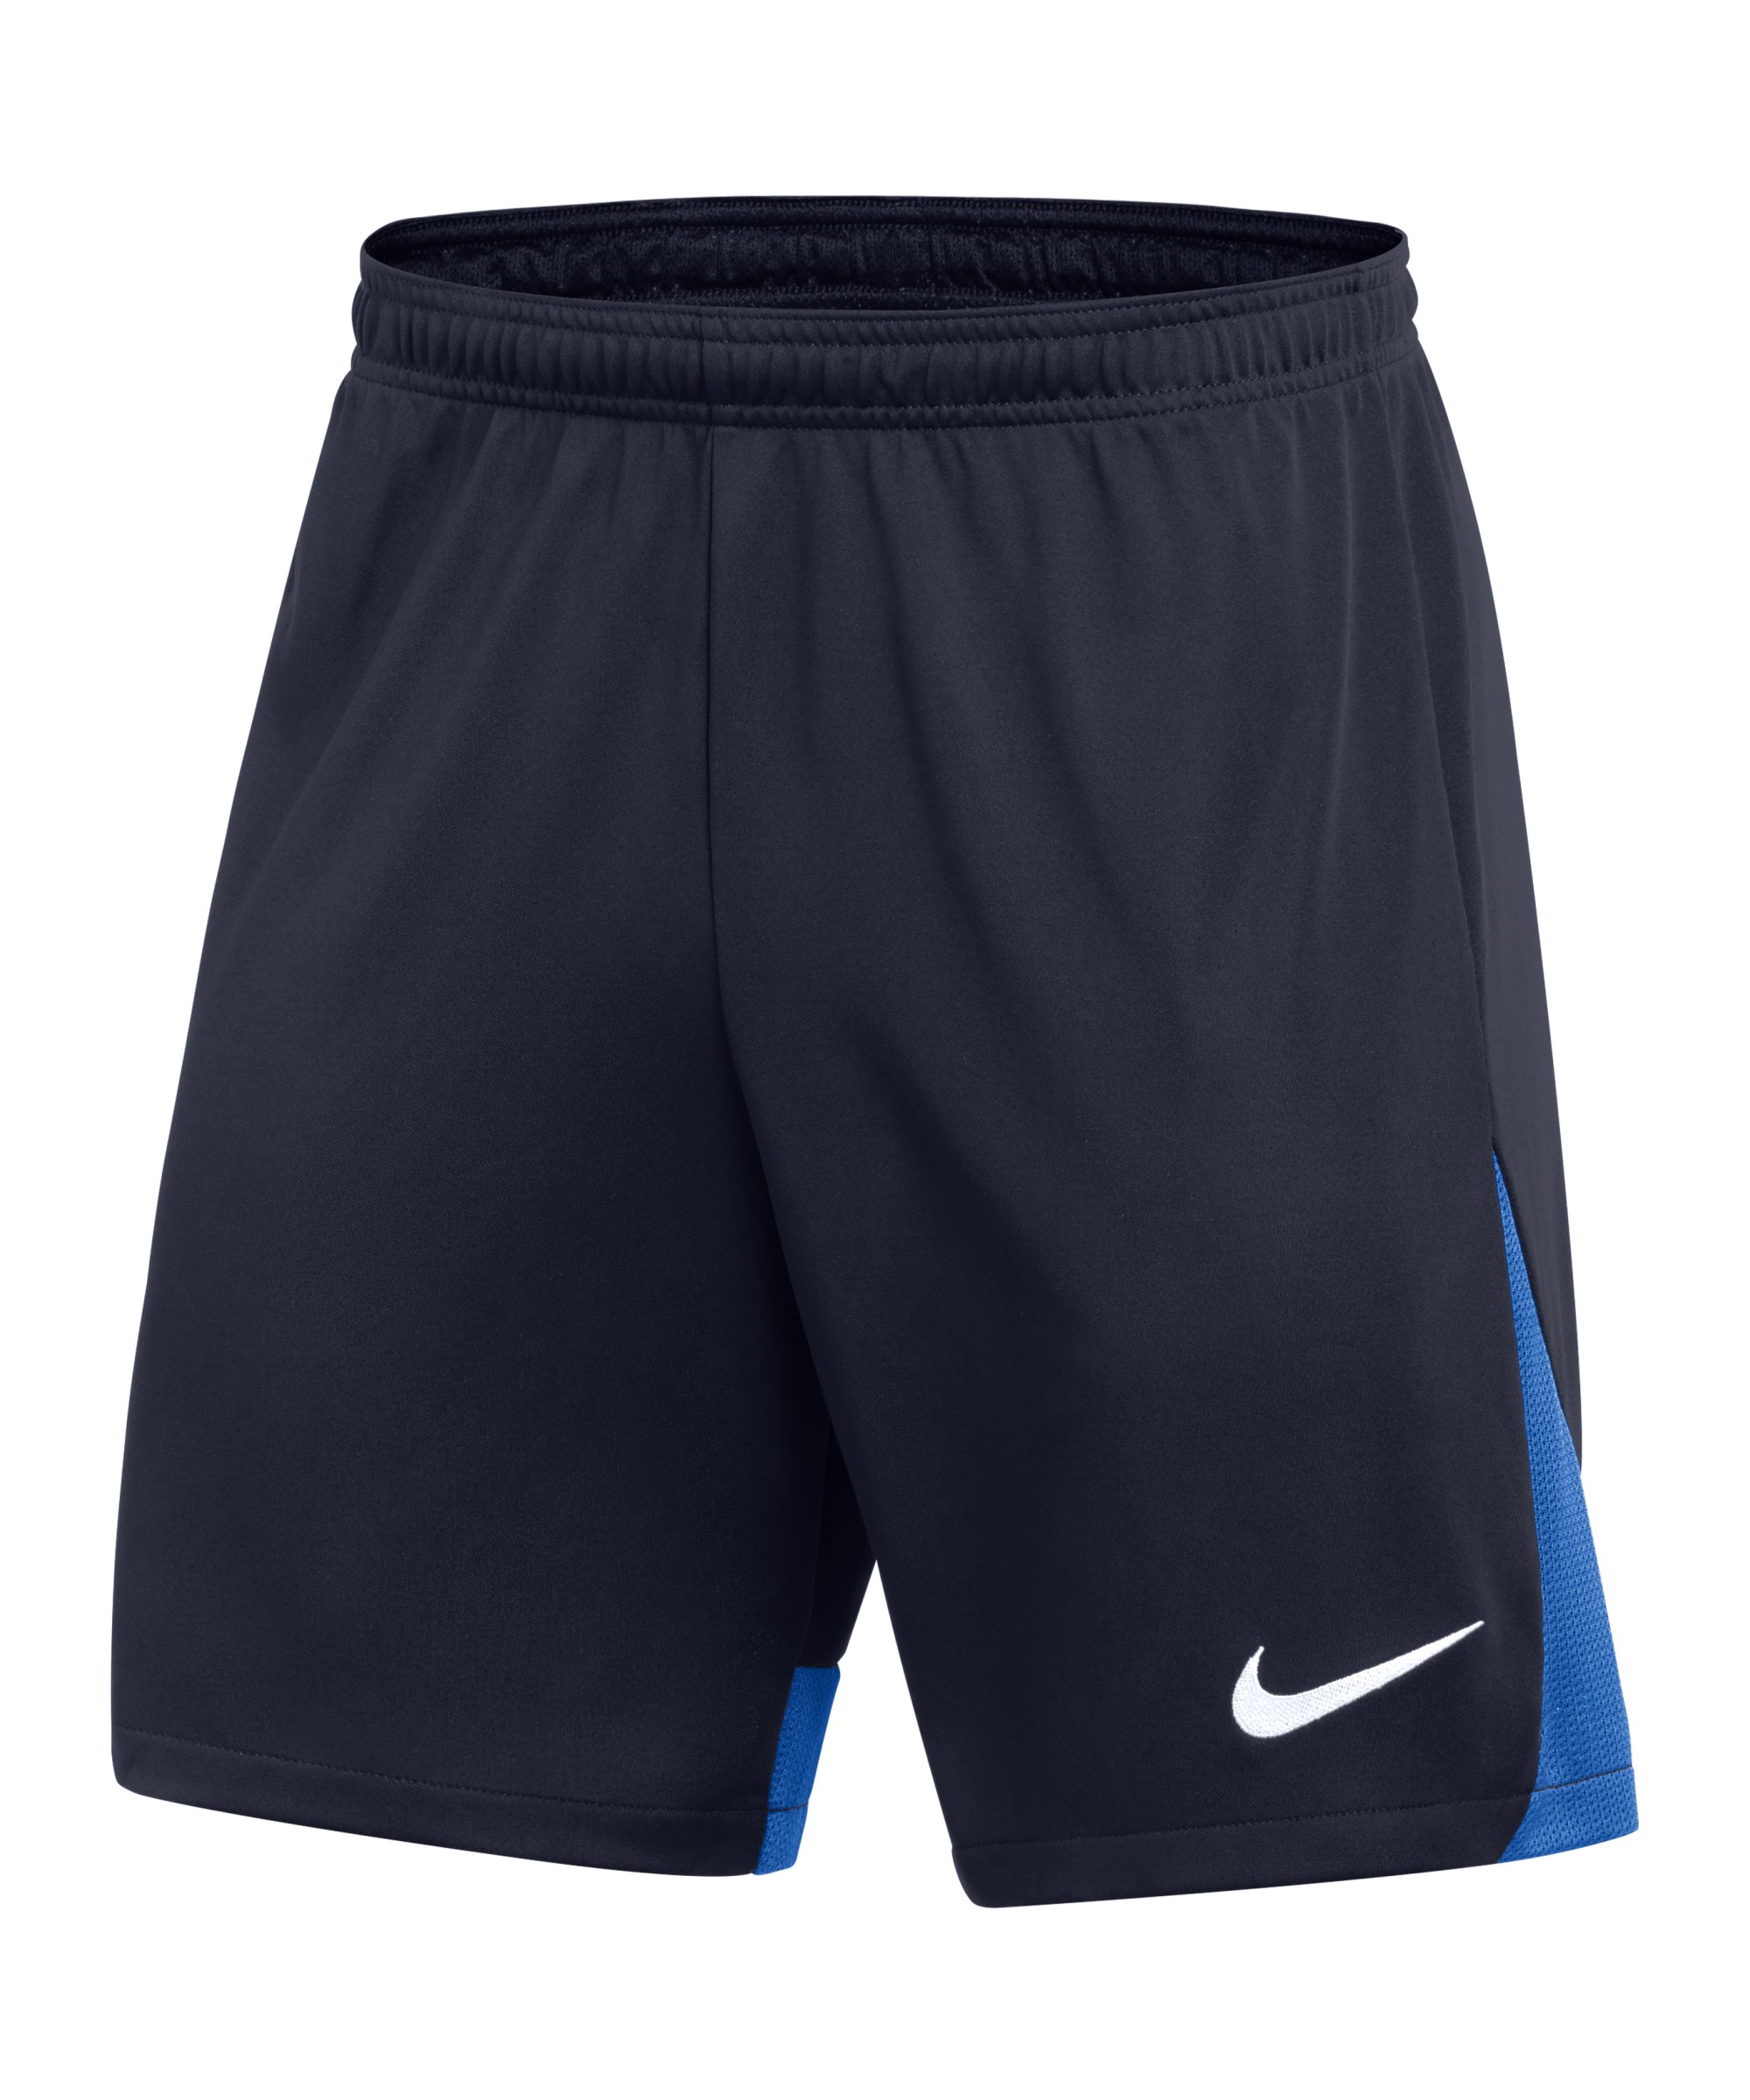 Nike Academy Pro Short Kids Blau F451 - blau